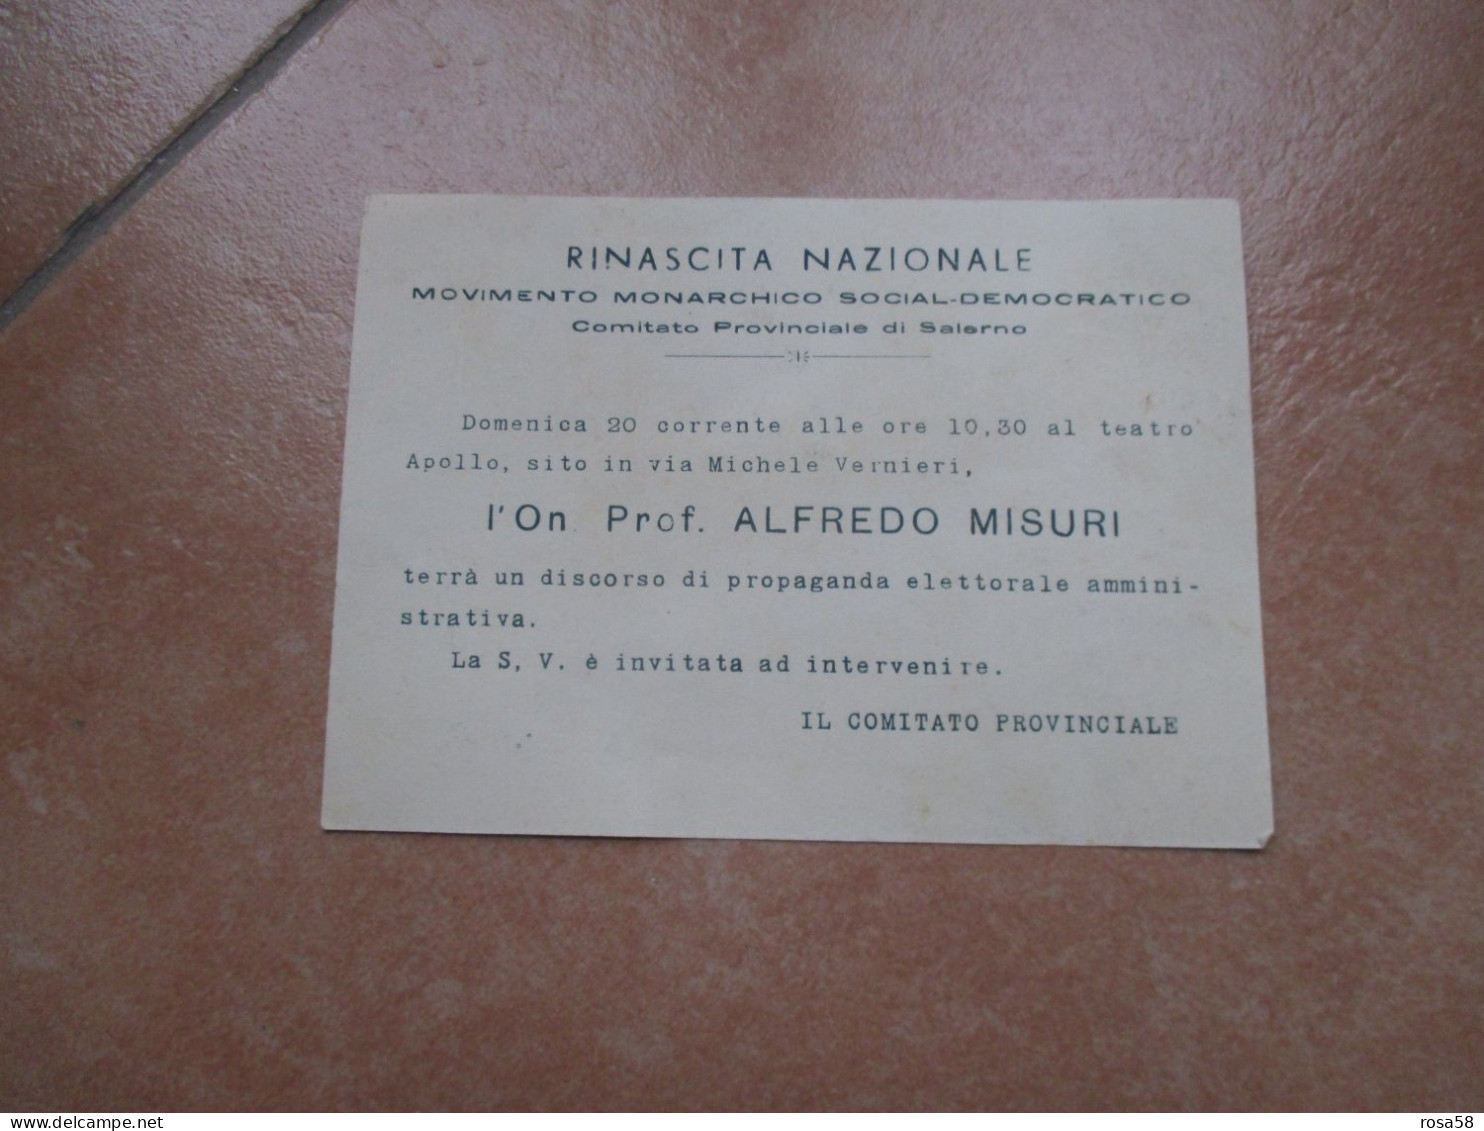 RINASCITA NAZIONALE Movimento Monarchico Social Democratico On.prof. ALFREDO MISURI Teatro Apollo Com.SALERNO - Programmes